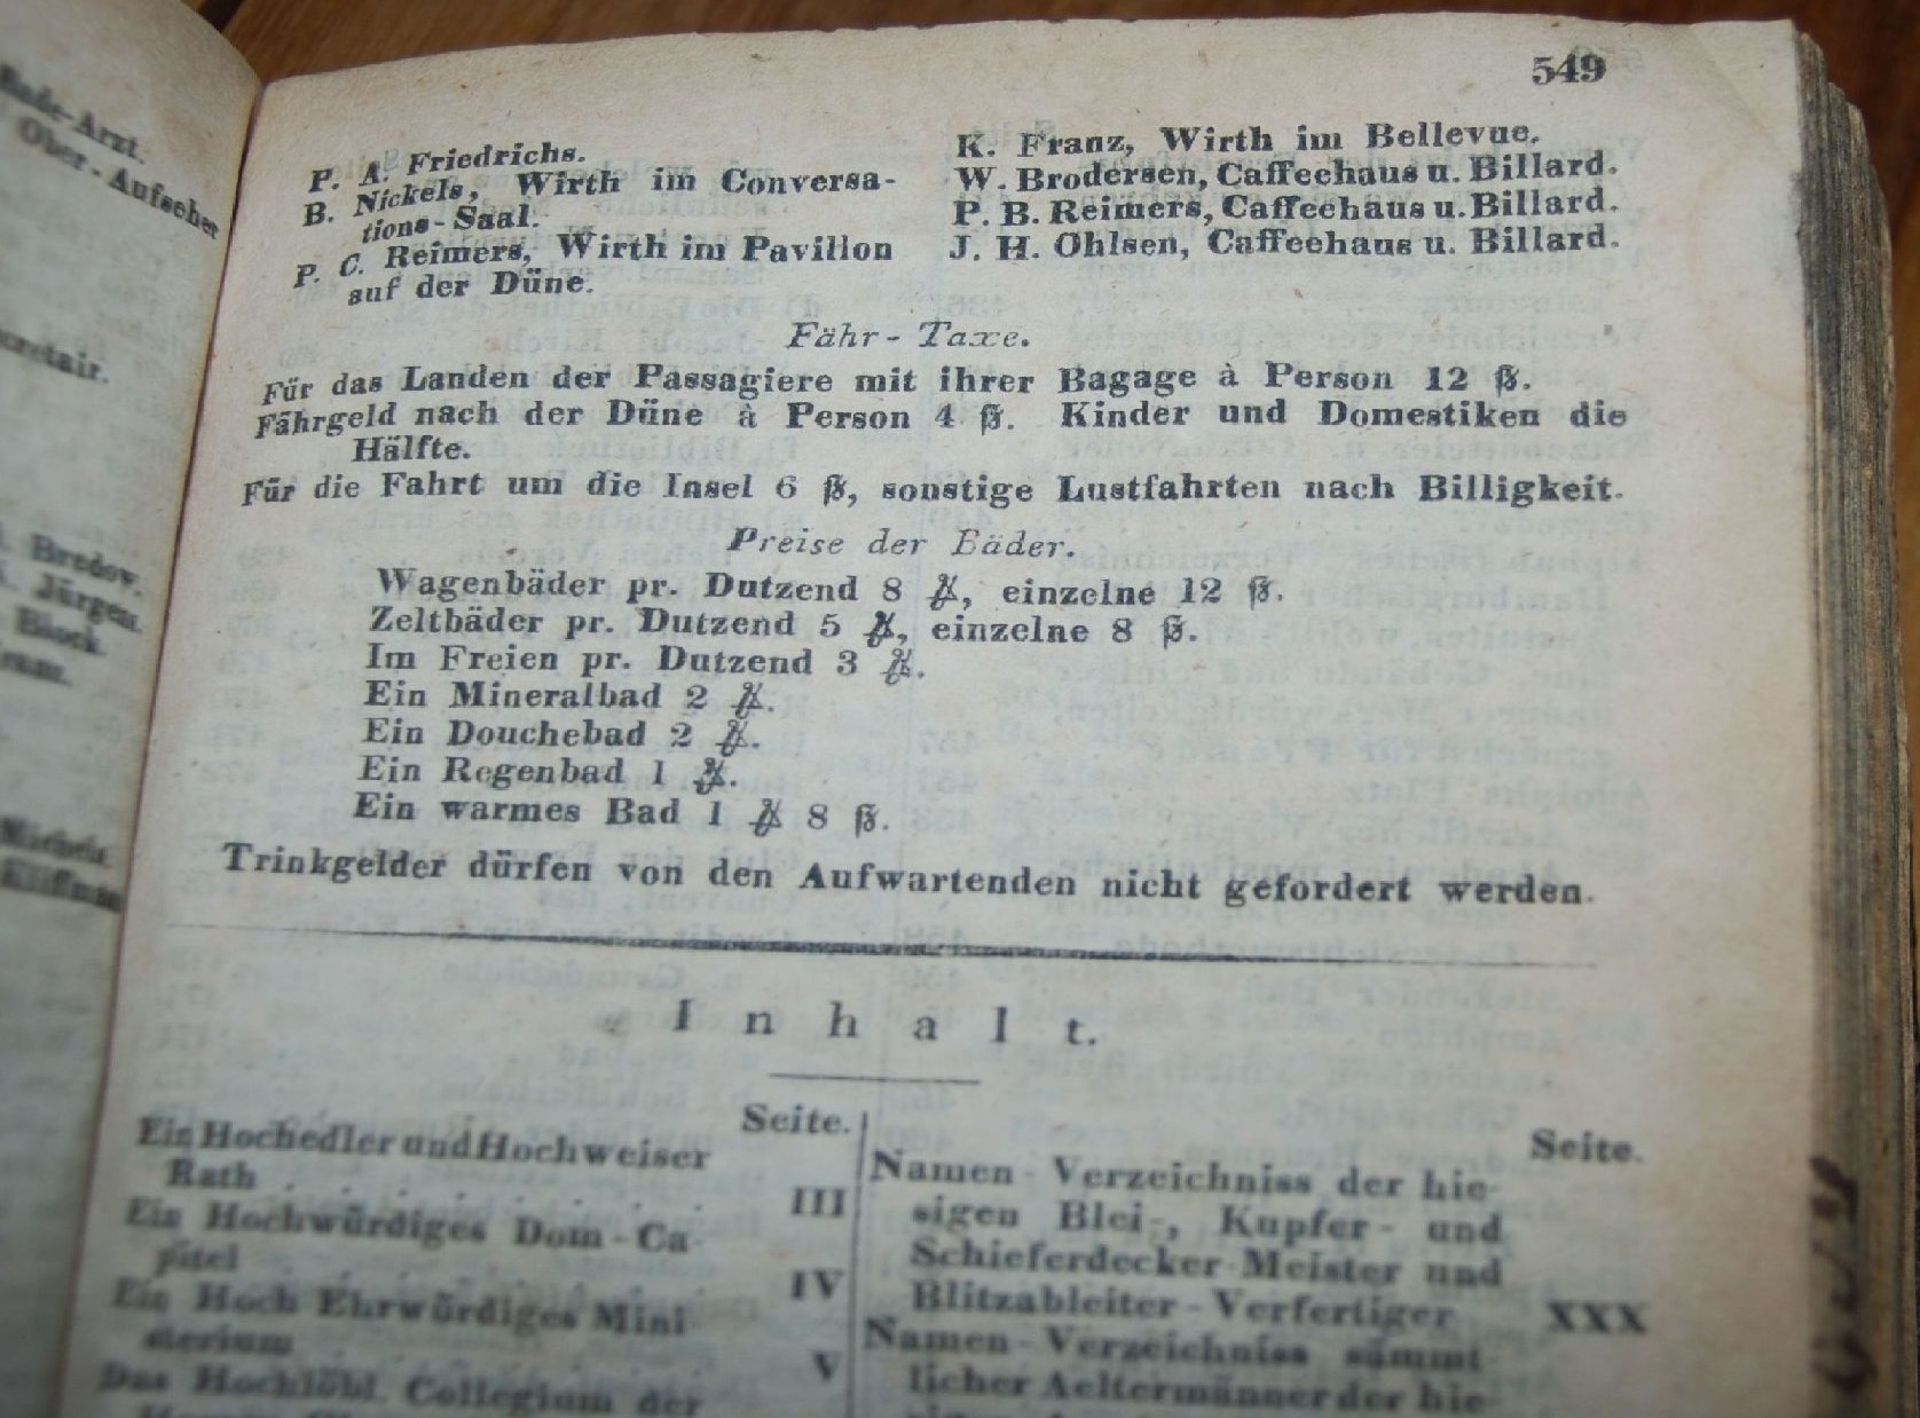 Hamburgisches Adress-Buch 1836, Bibliothekseinband, seitl. beschriftet, 20x13 cm, H-6,5 cm- - -22.61 - Bild 7 aus 9